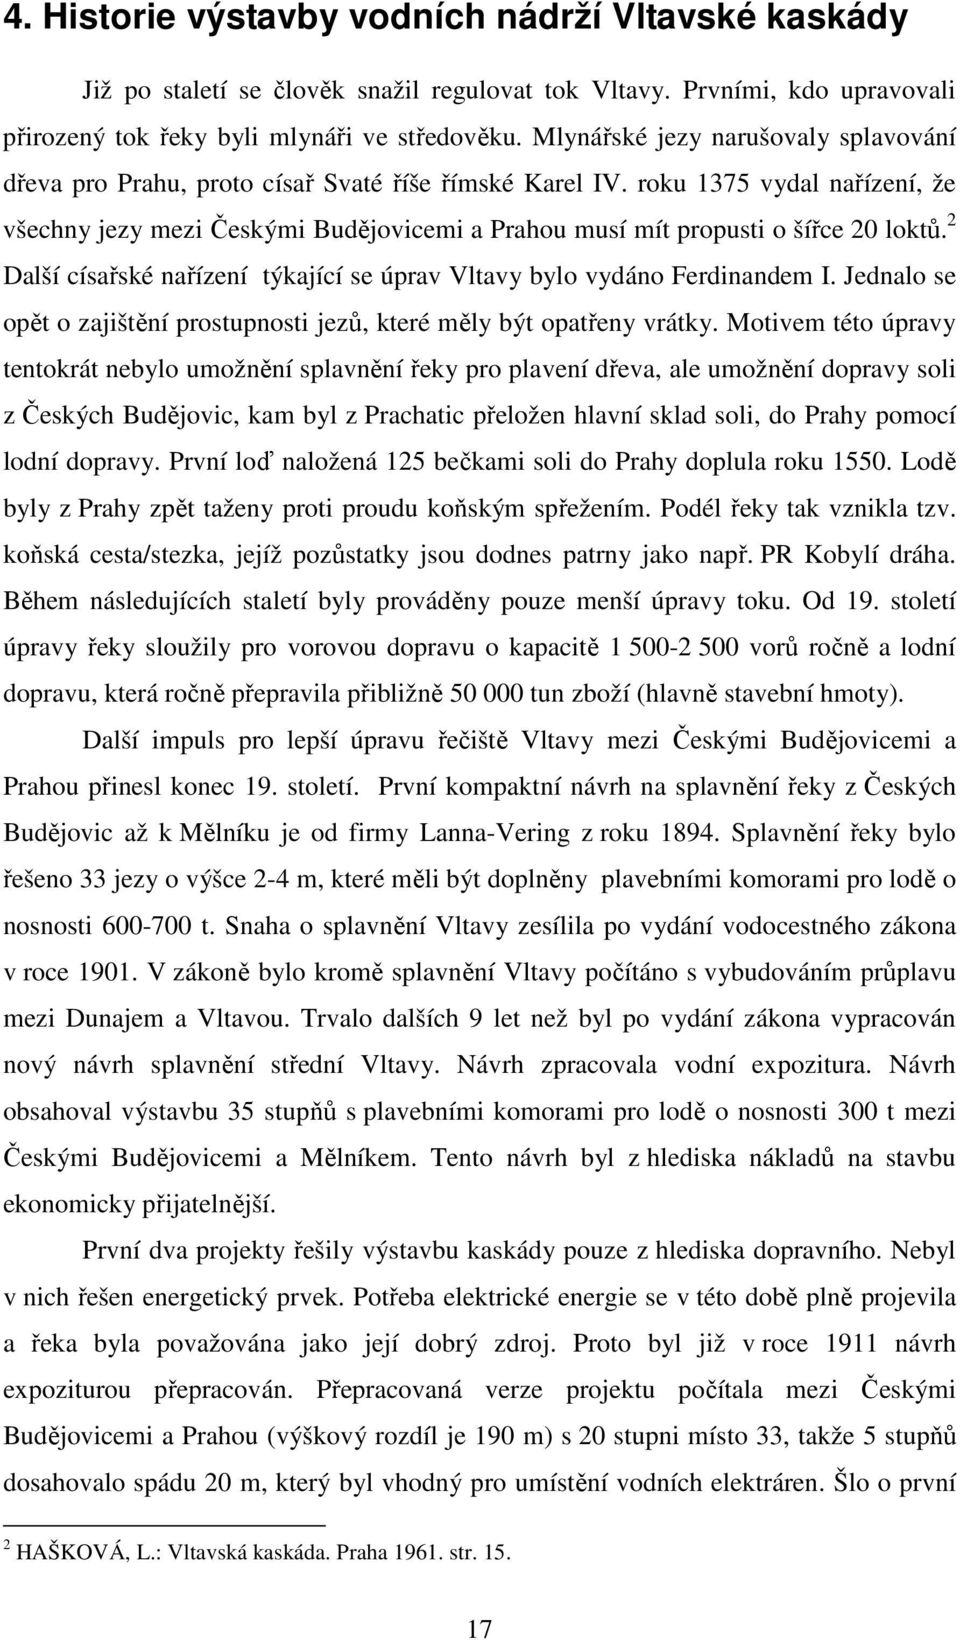 roku 1375 vydal nařízení, že všechny jezy mezi Českými Budějovicemi a Prahou musí mít propusti o šířce 20 loktů. 2 Další císařské nařízení týkající se úprav Vltavy bylo vydáno Ferdinandem I.